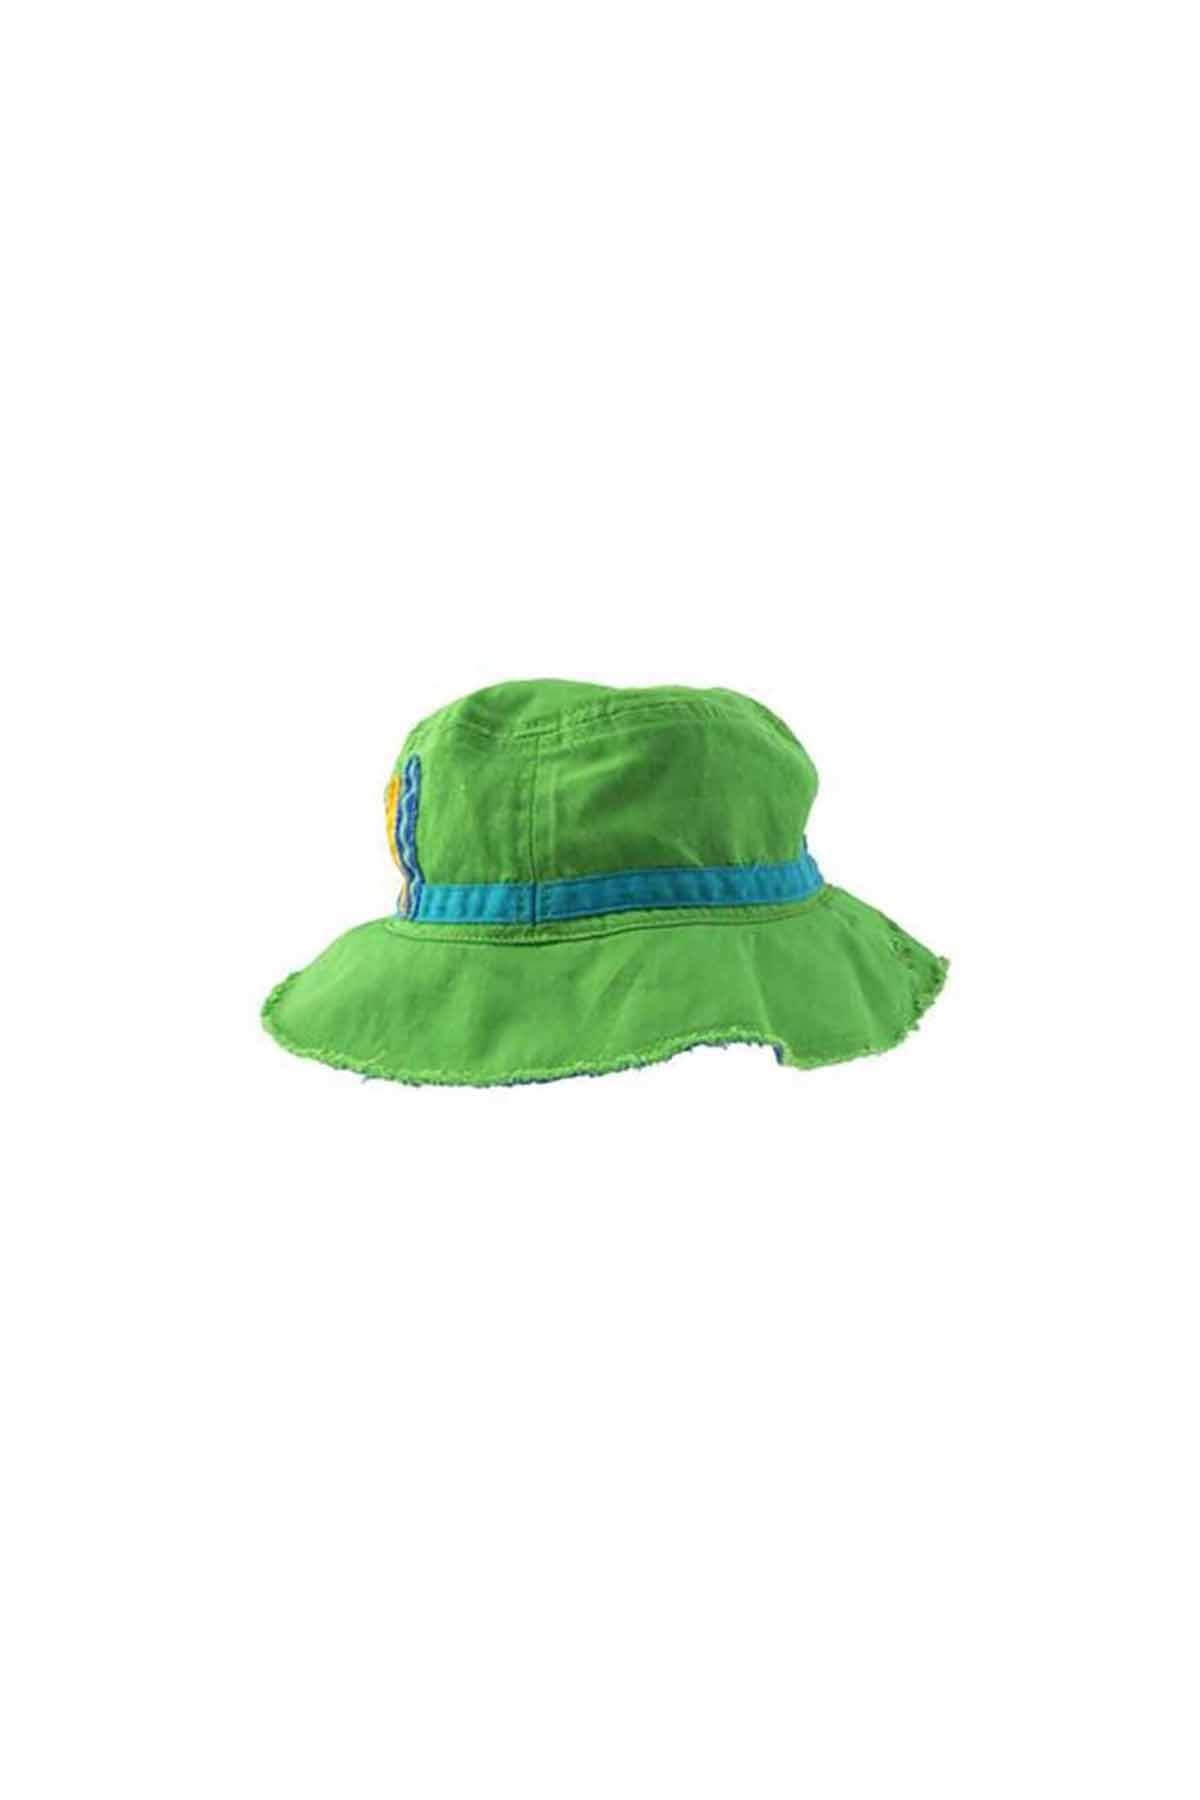 Stephen Joseph Şapka Yeşil Dinosaur